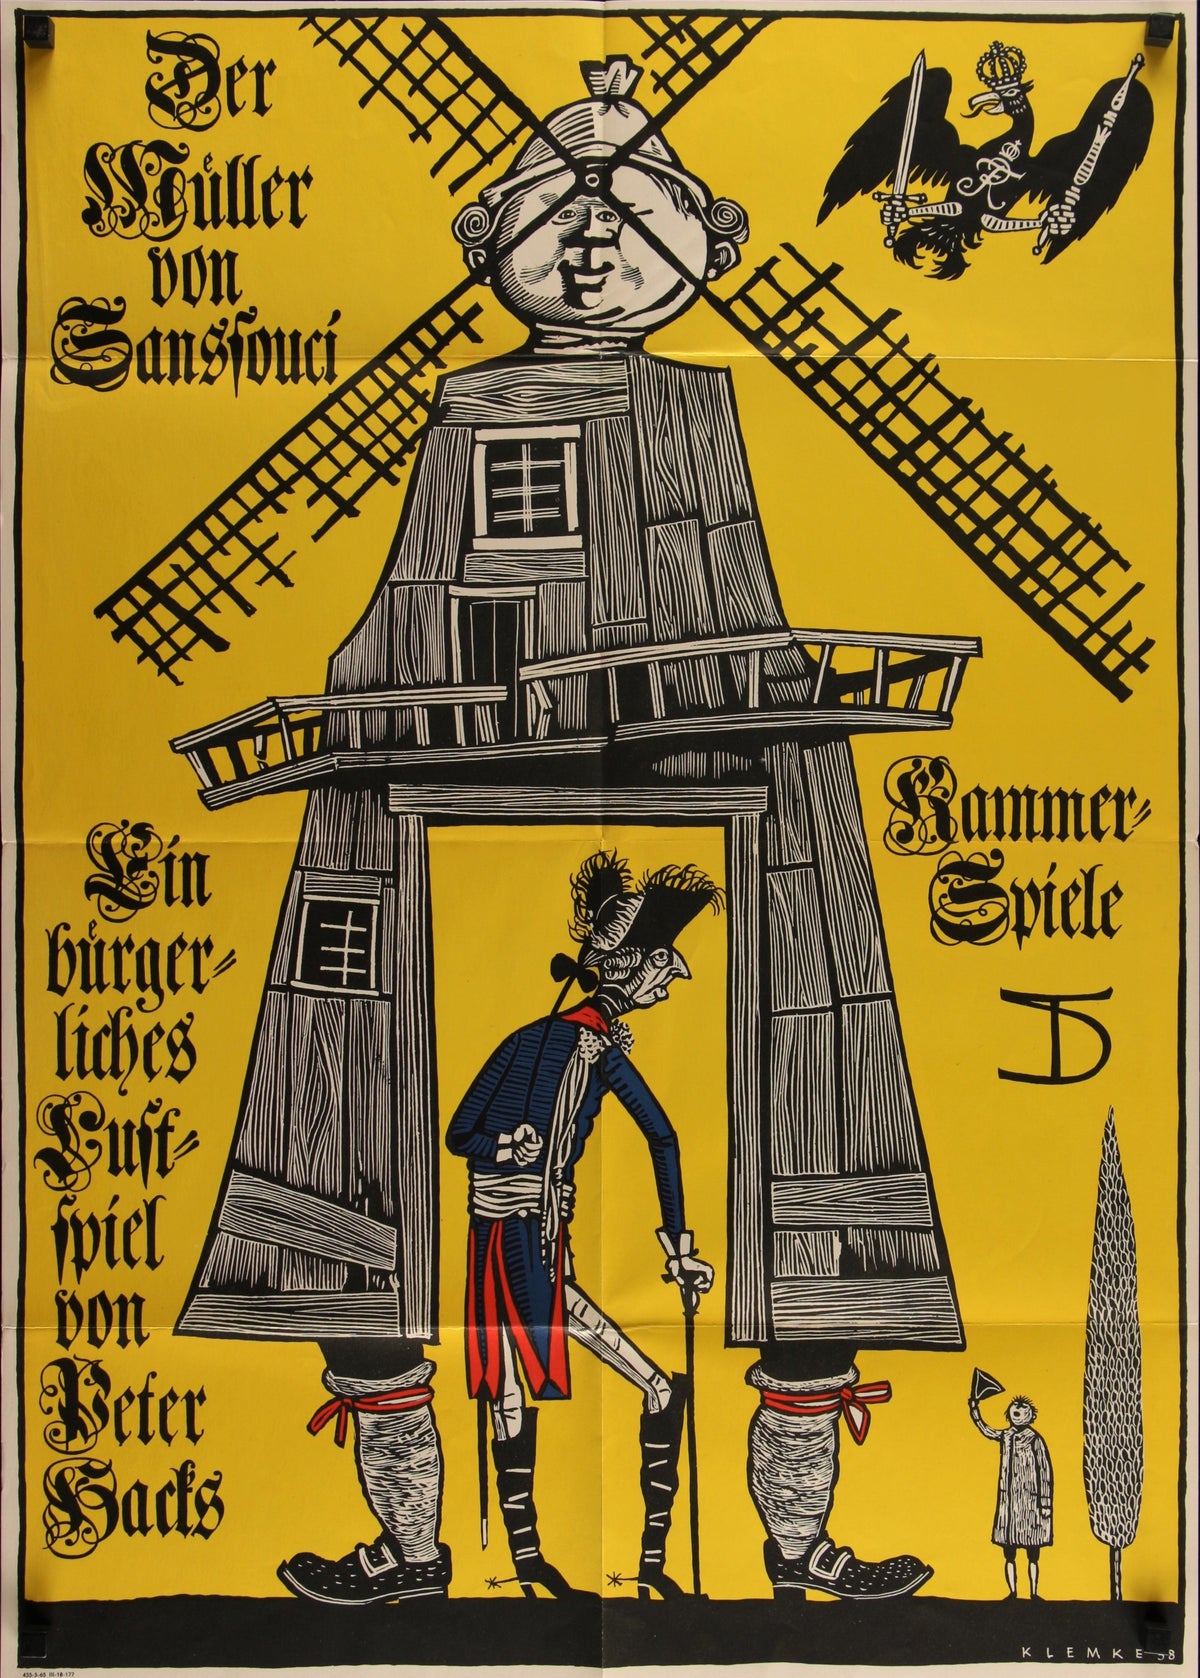 Das Deutsche Plakat_2 - Authentic Vintage Poster